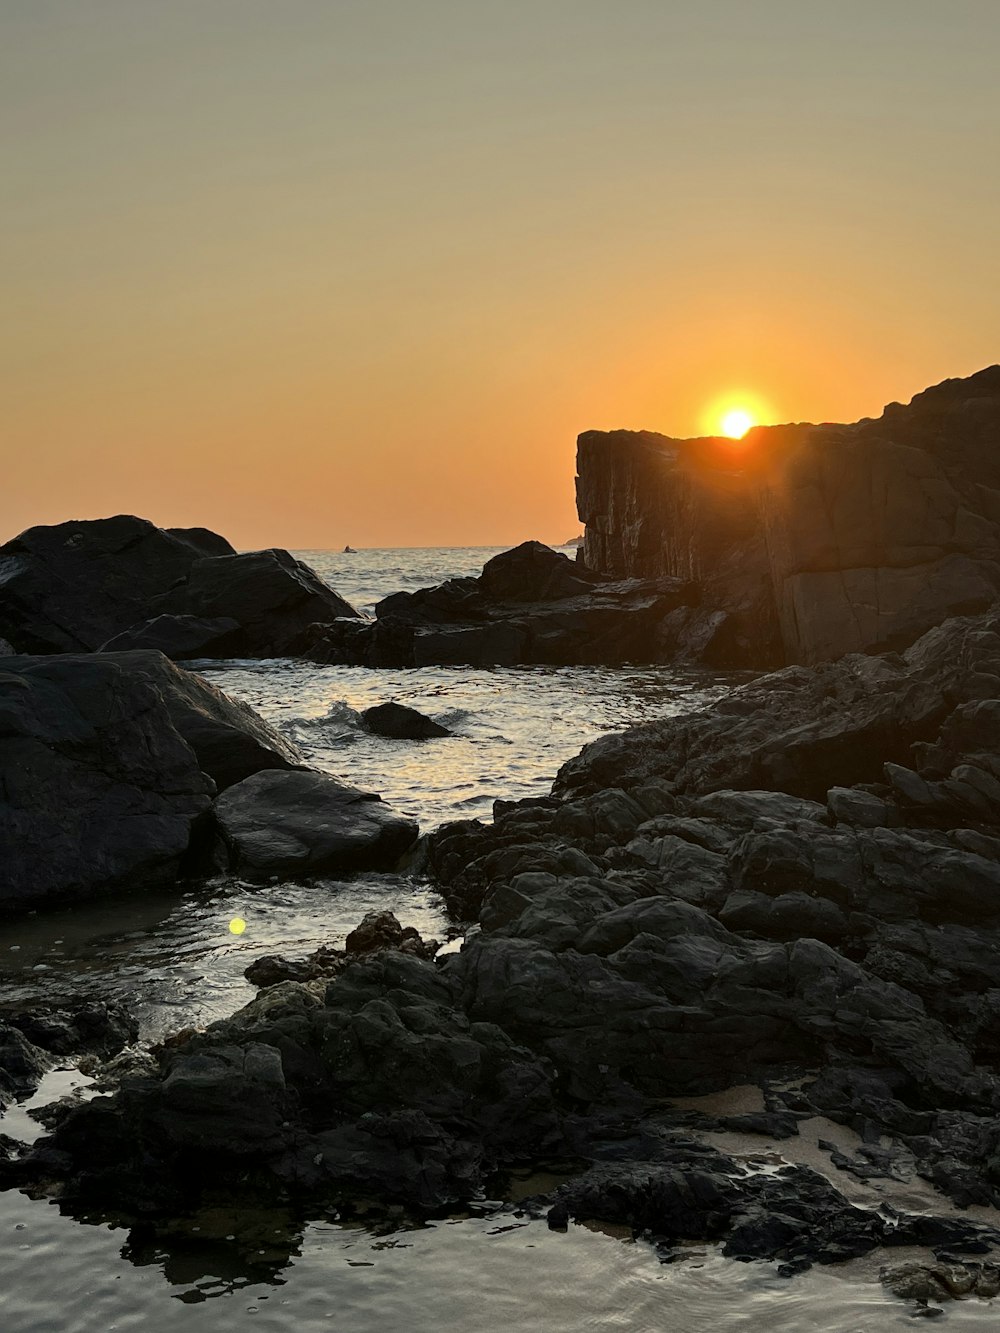 Le soleil se couche sur l’eau et les rochers